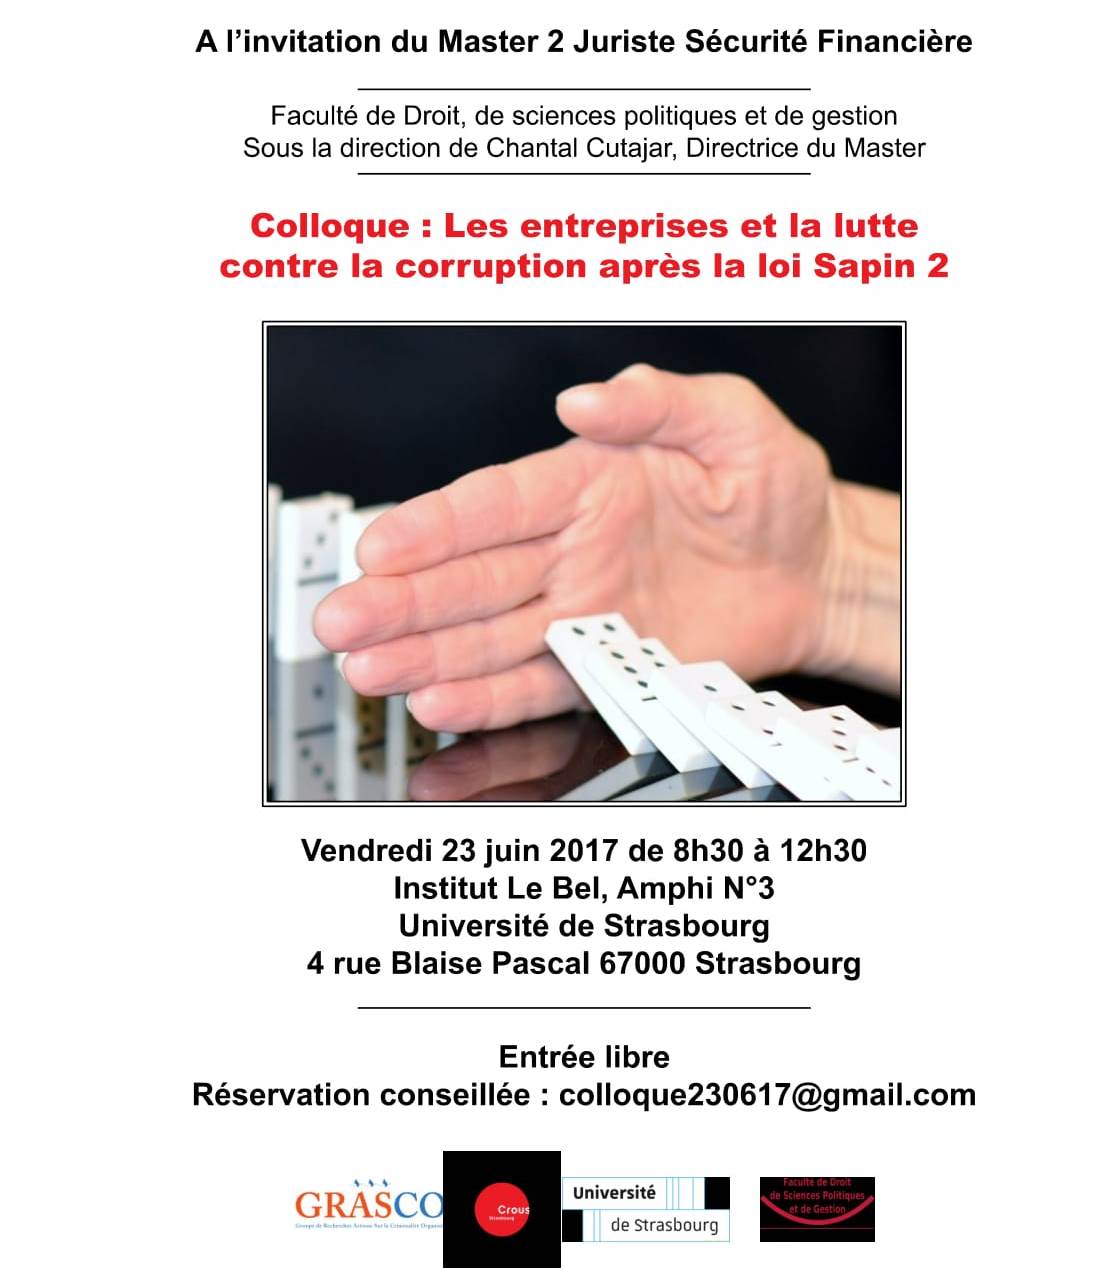 Colloque : Les entrepisres et la lutte contre la corruption après la loi Sapin 2. Vendredi 23 juin 2017 de 8h30 à 12h30